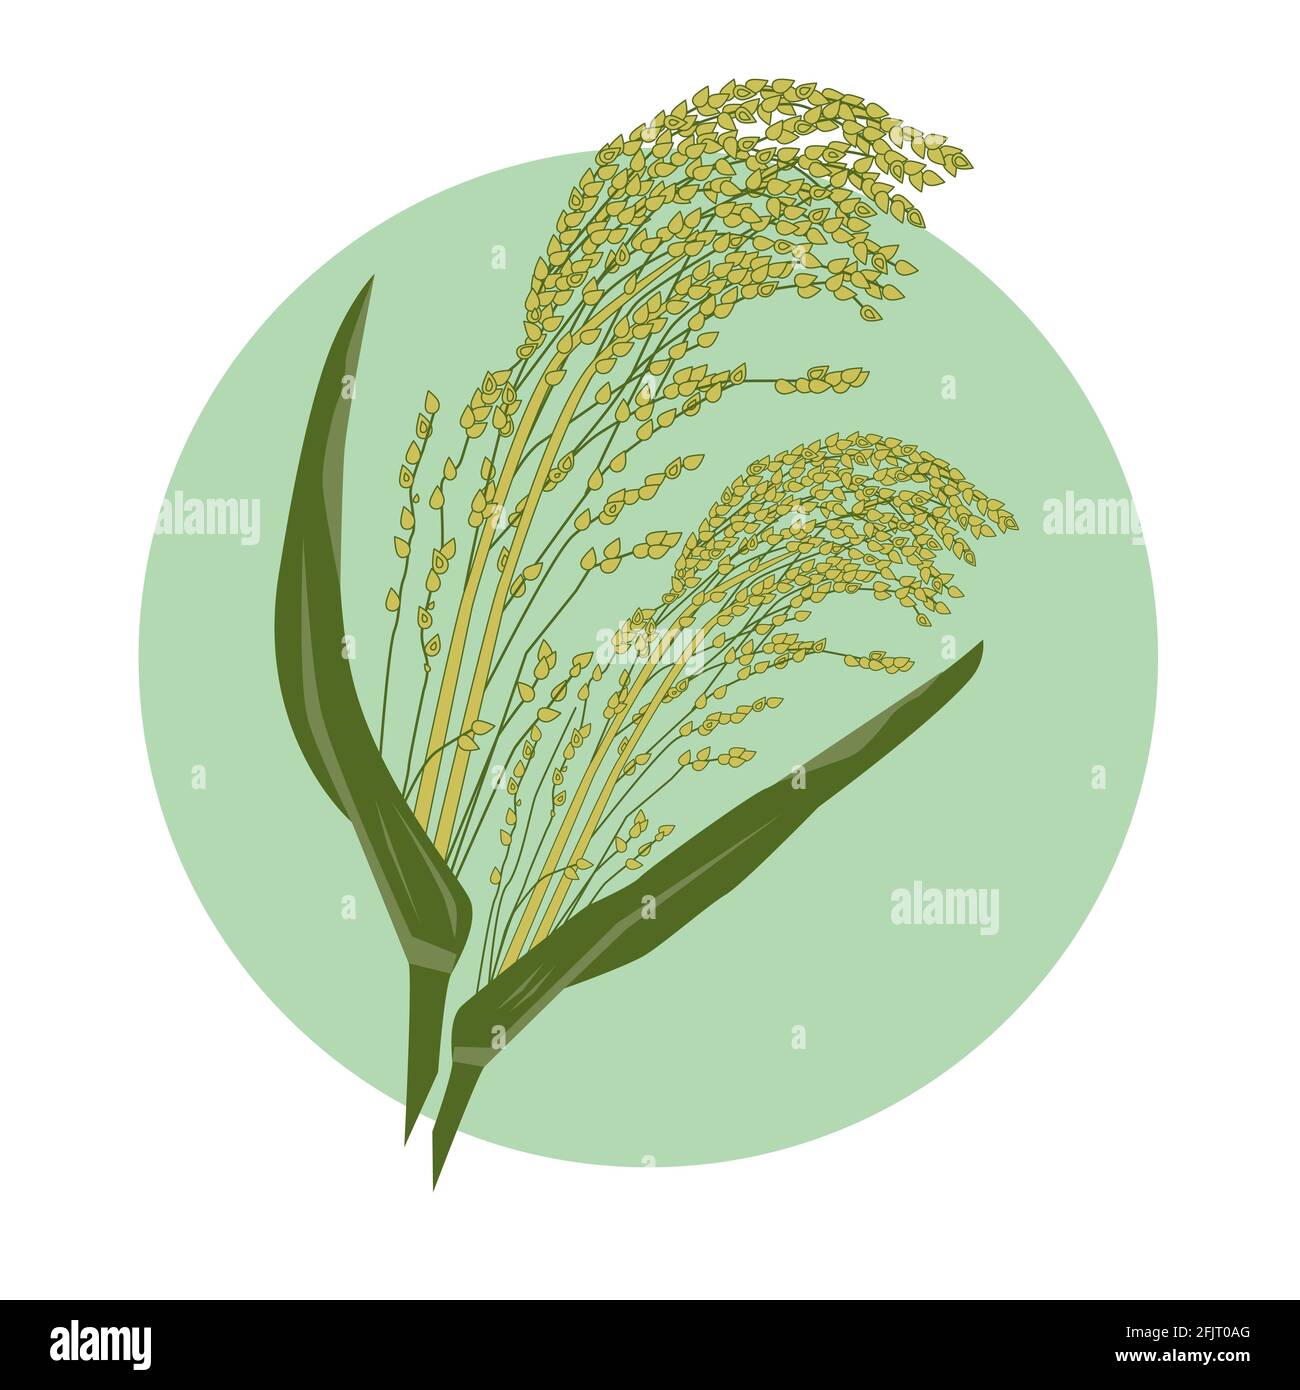 Couleur vert-jaune millet, illustration vectorielle dessinée à la main d'une plante de semences de céréales avec des feuilles. Végétarien alimentation saine alimentation végétalienne nutrition porridge ing Illustration de Vecteur